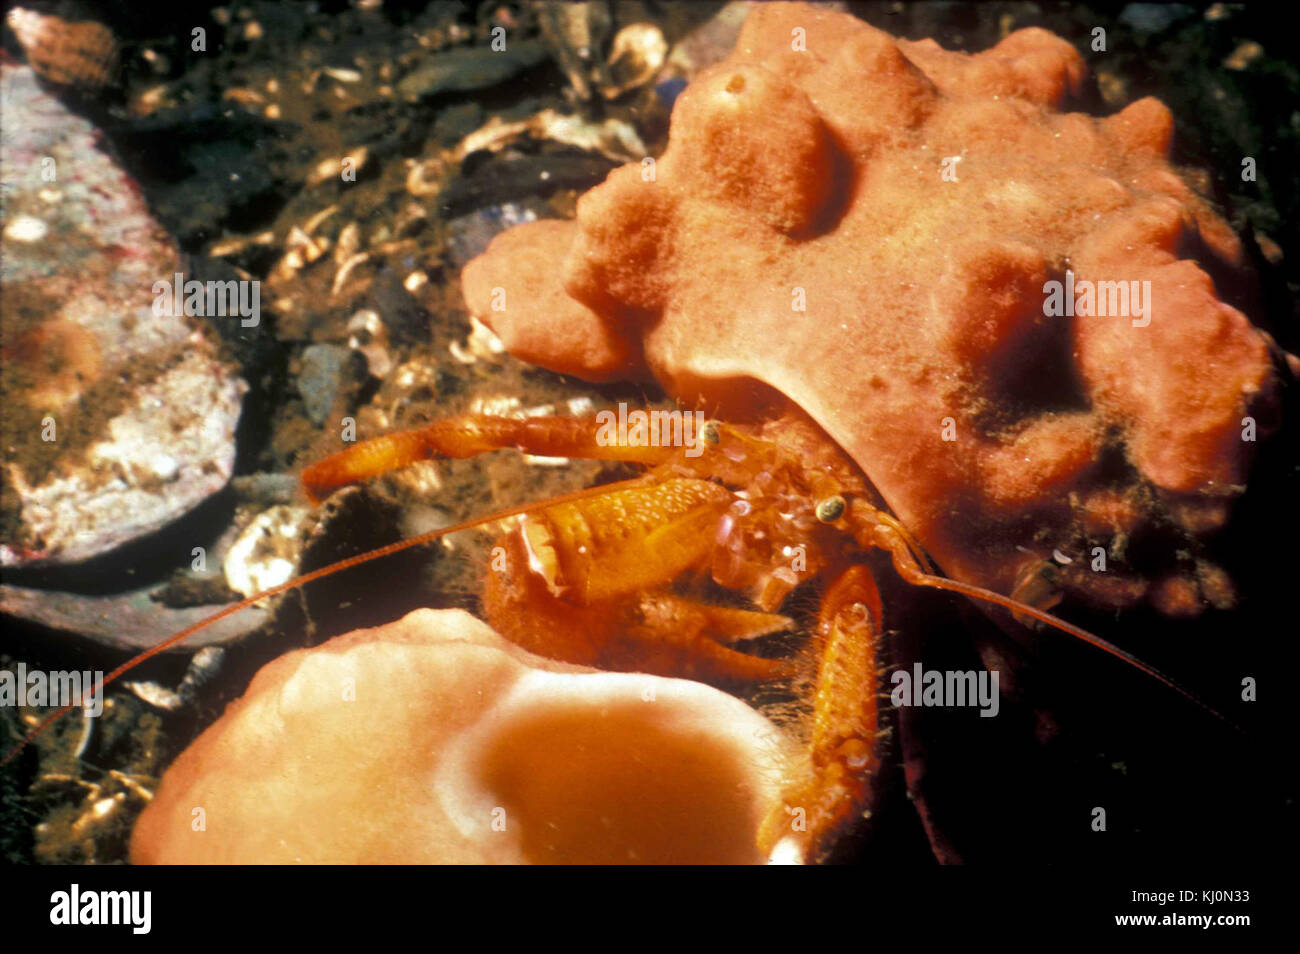 Hermit crab in hermit crab sponge pagurus impressus Stock Photo